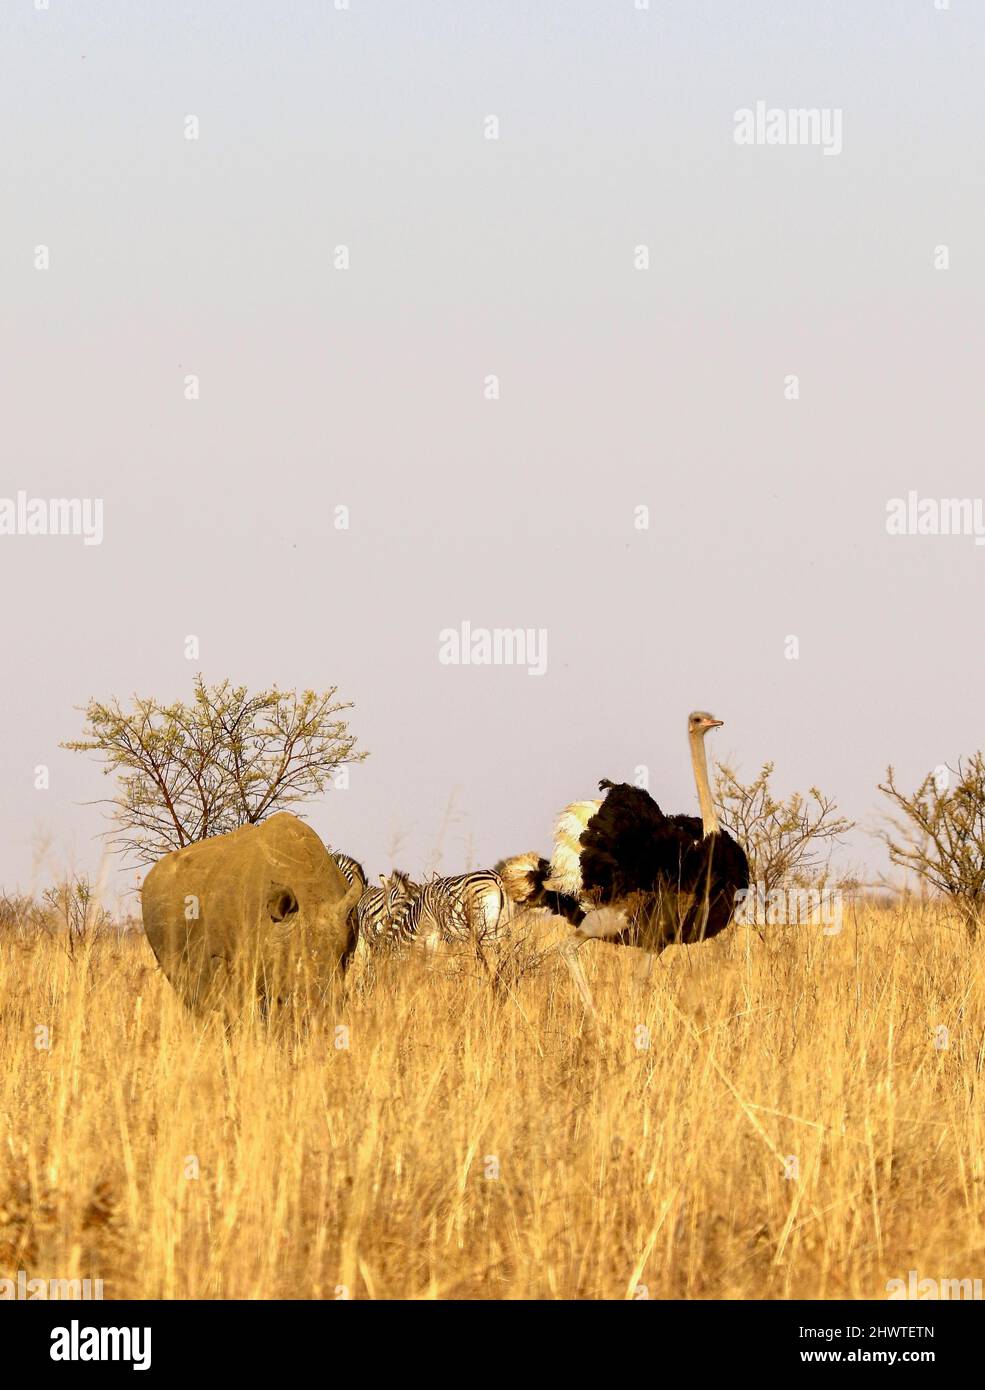 Scena animale: Rinoceronte bianco, Zebra pianure e struzzo comune (Sudafrica) Foto Stock